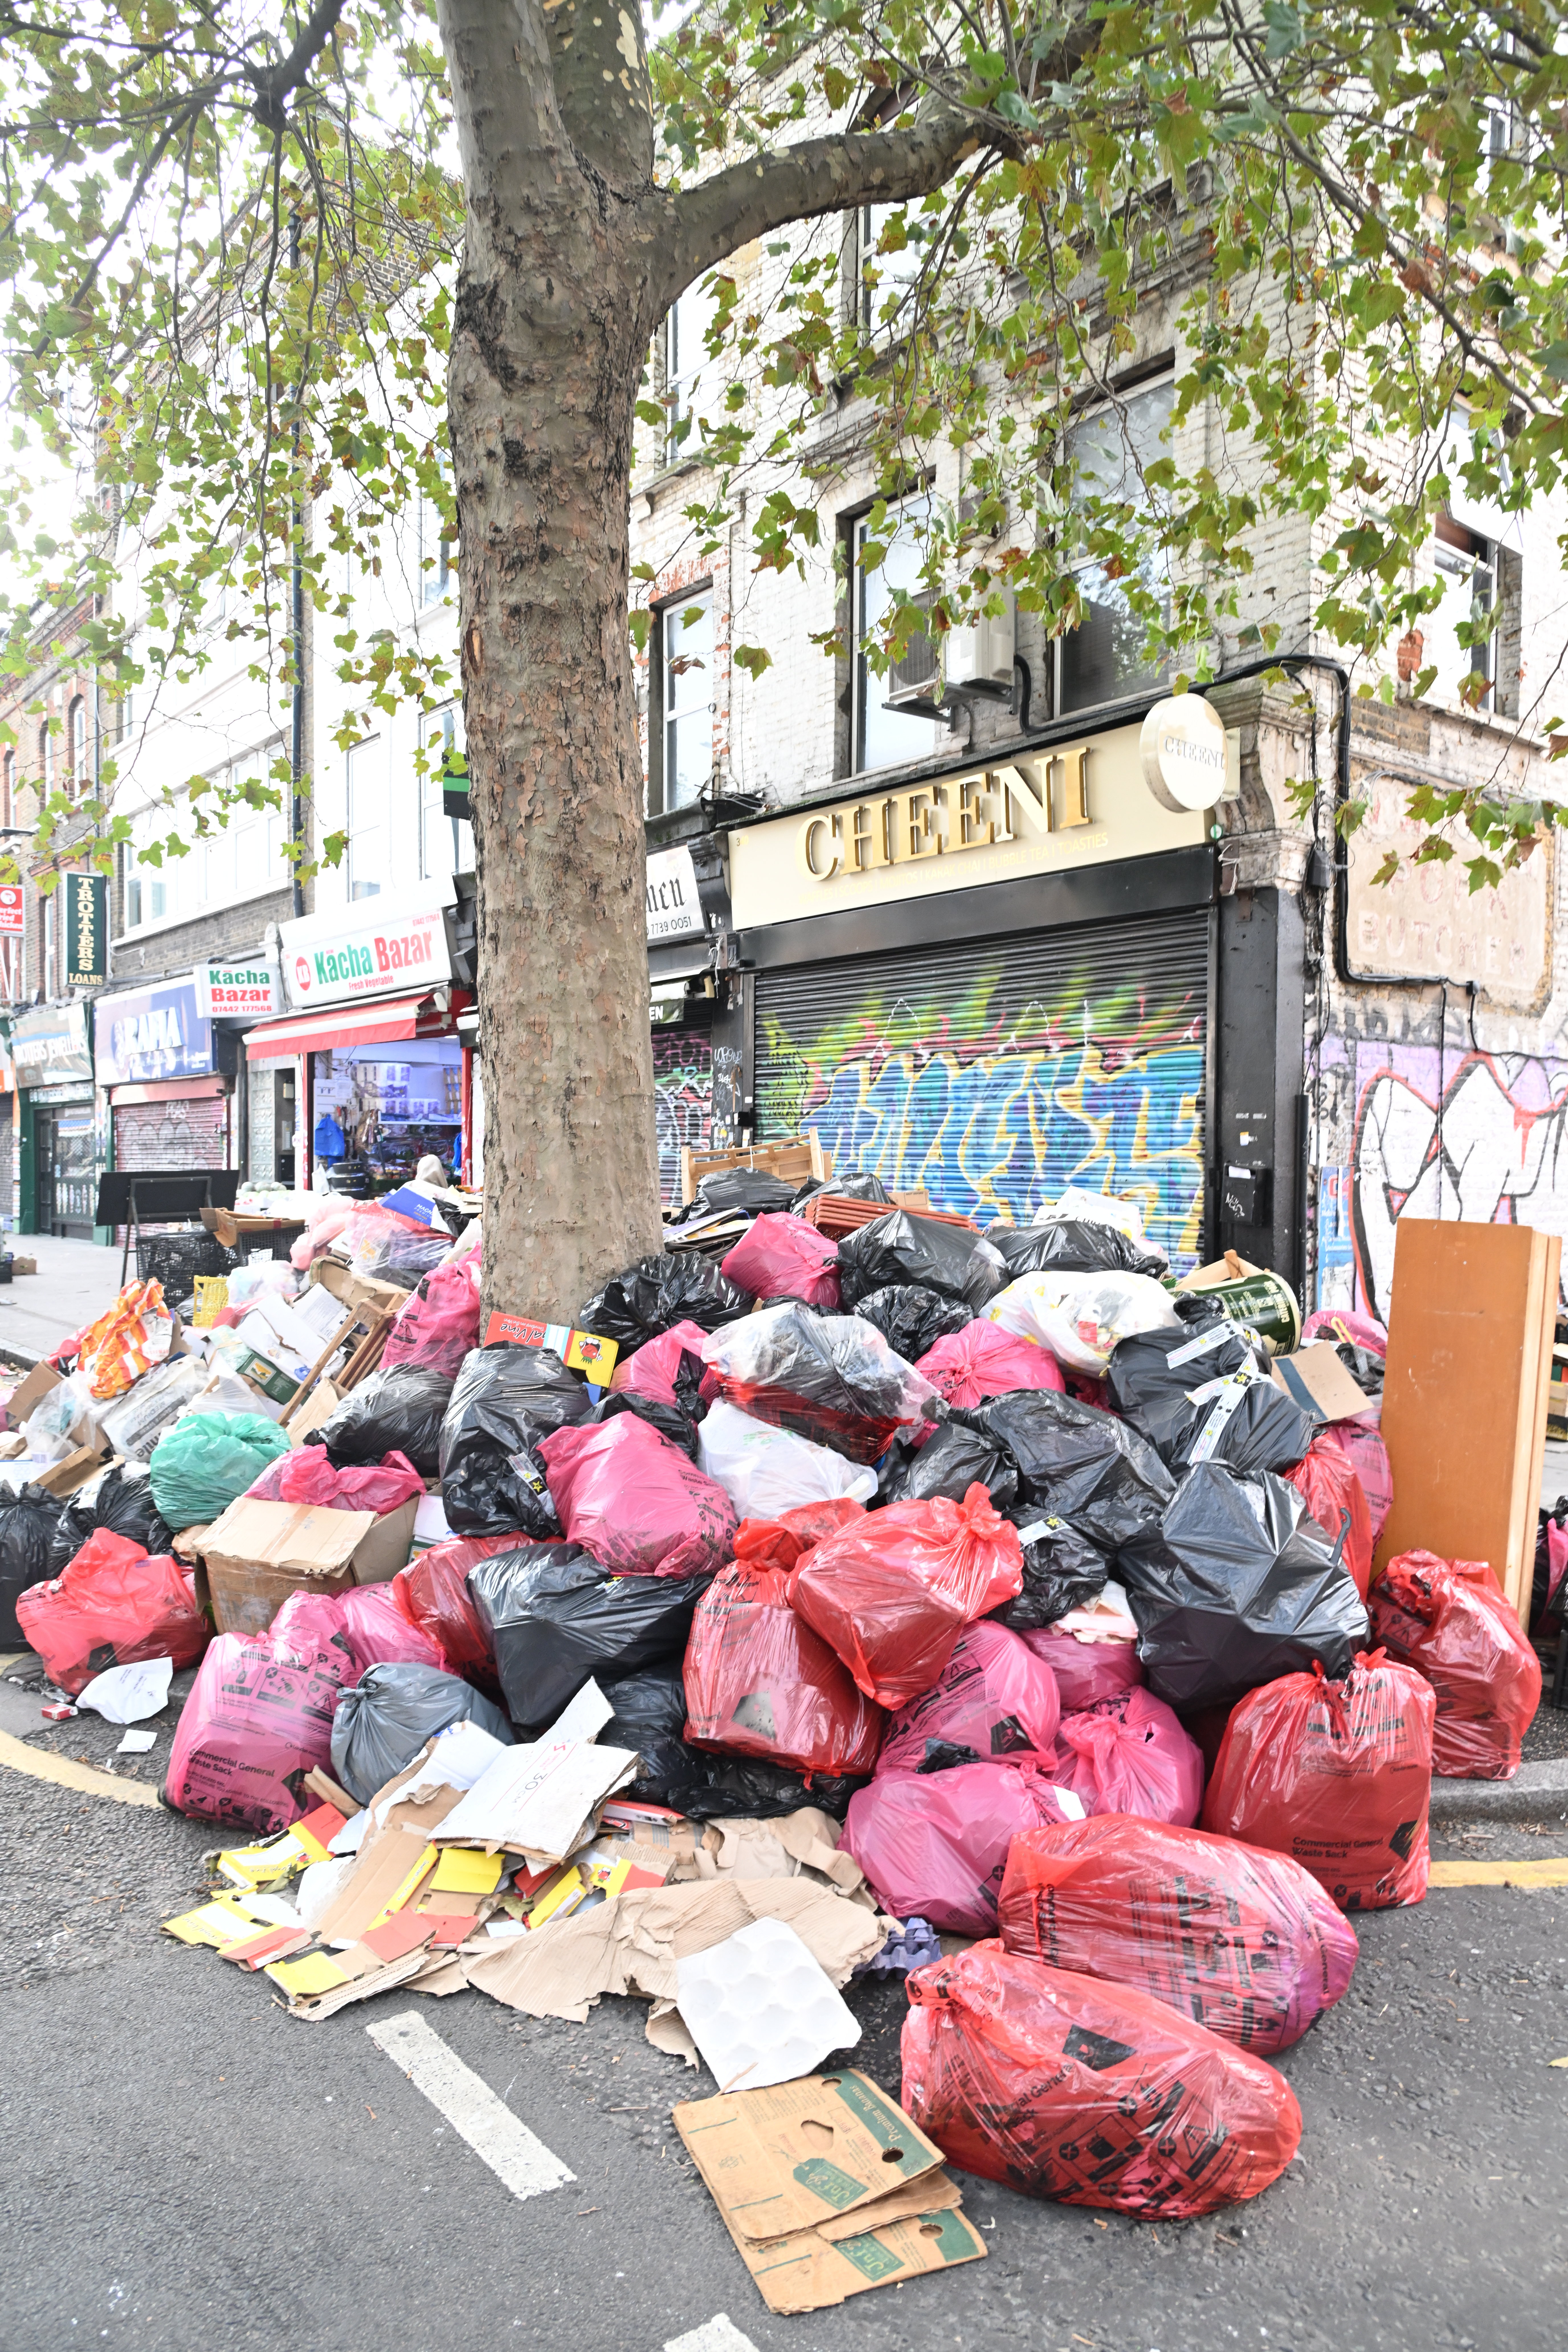 Fotos und Videos zeigen hoch aufgetürmte Mülltürme